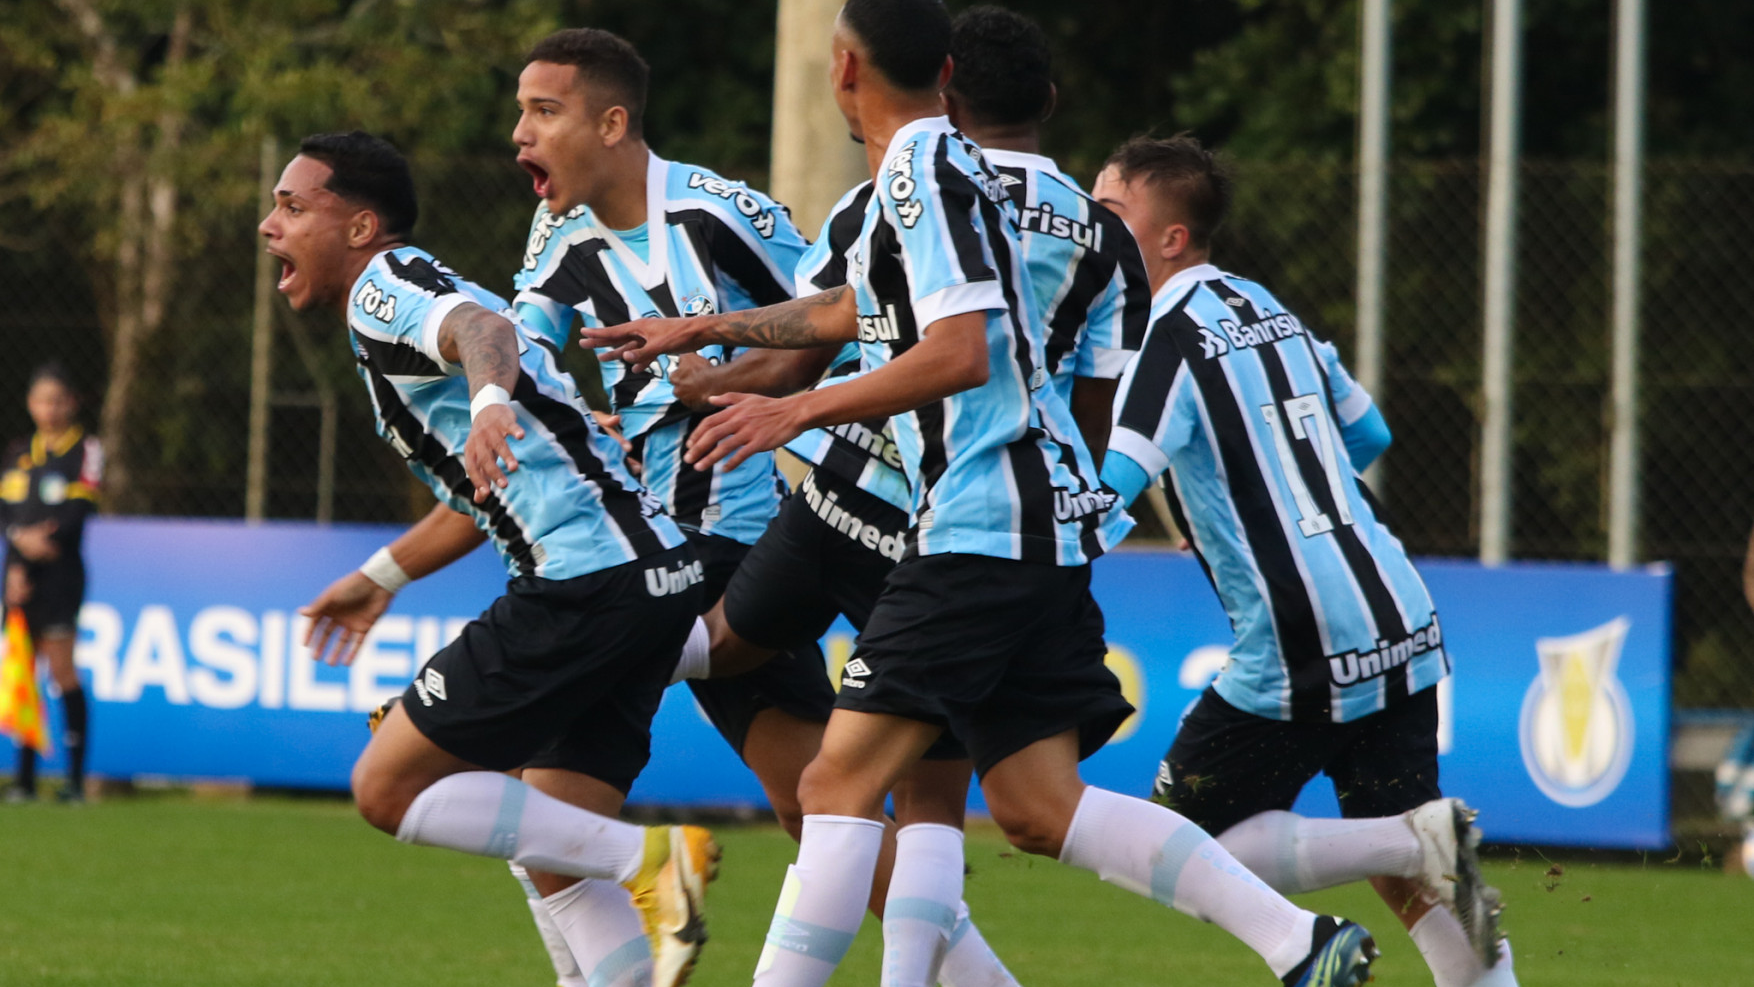 Nos acréscimos, Grêmio marca dois e vence Fortaleza pelo Brasileirão Sub-20